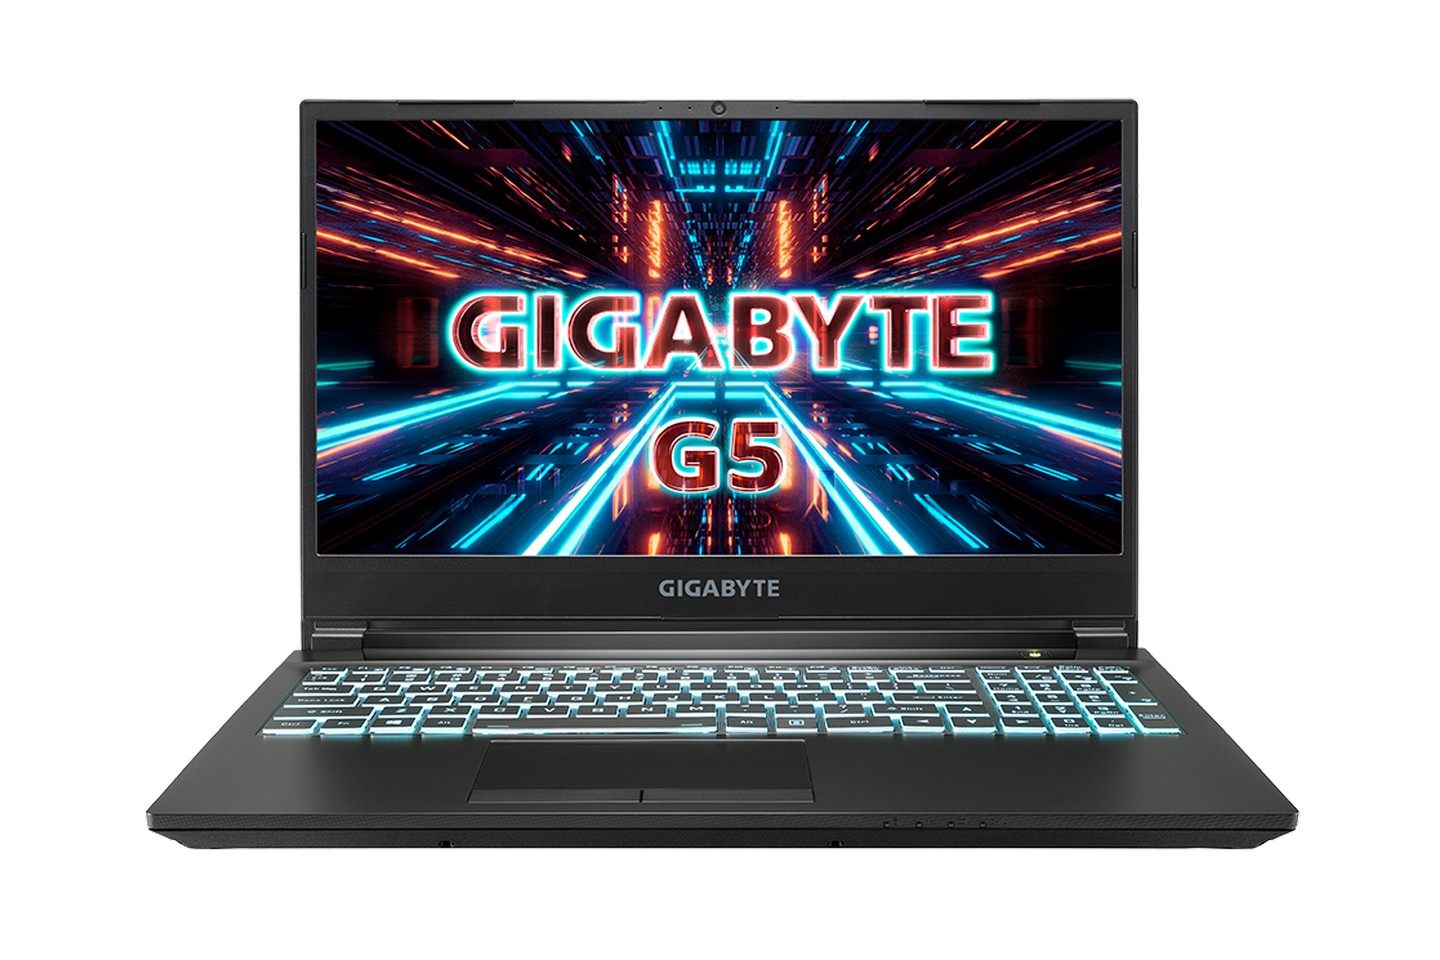 gigabyte g5 15